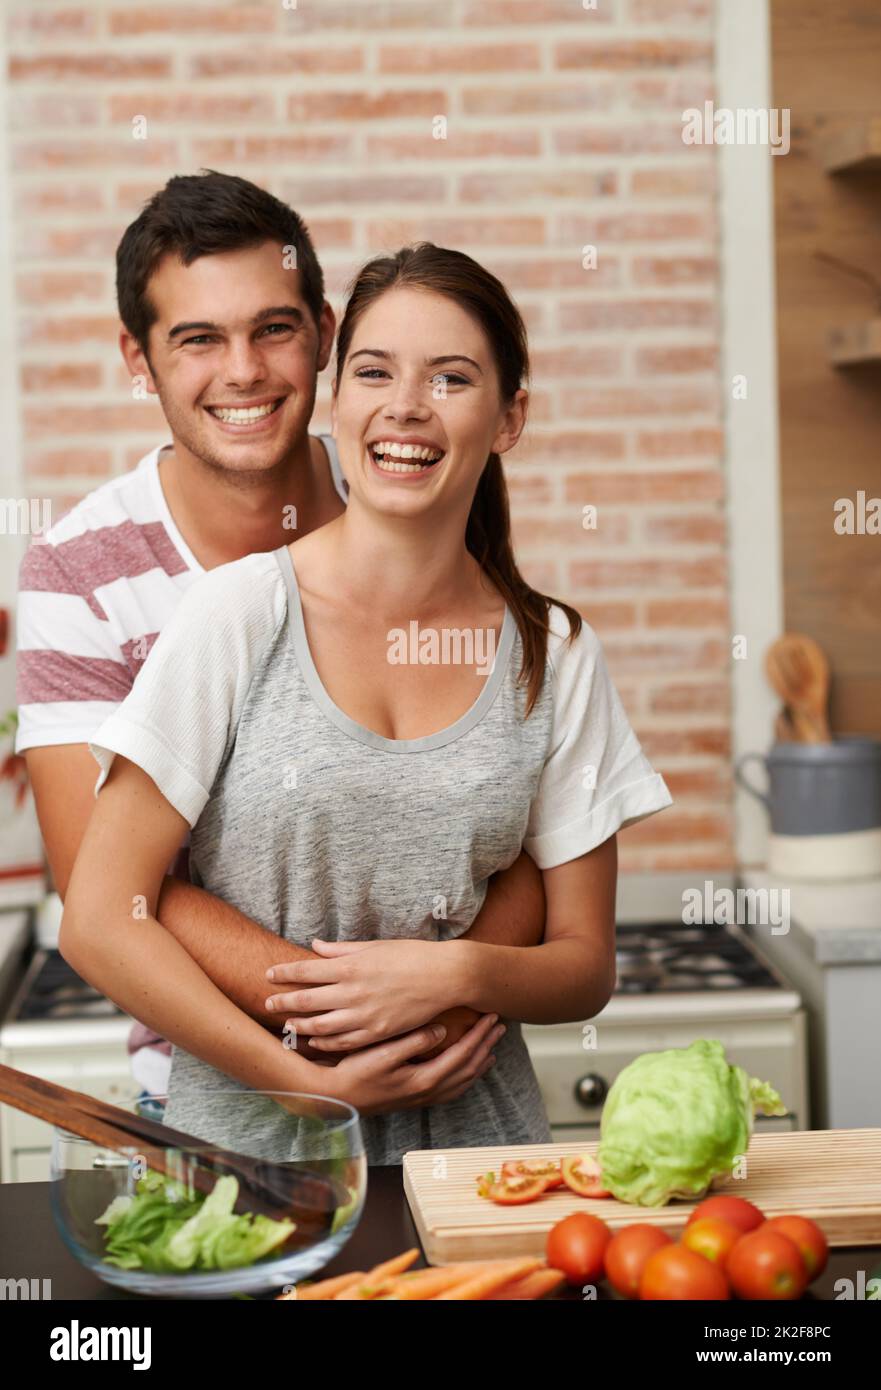 Ihre geheime Zutat ist Liebe. Porträt eines attraktiven jungen Paares, das sich in der Küche verklebt. Stockfoto